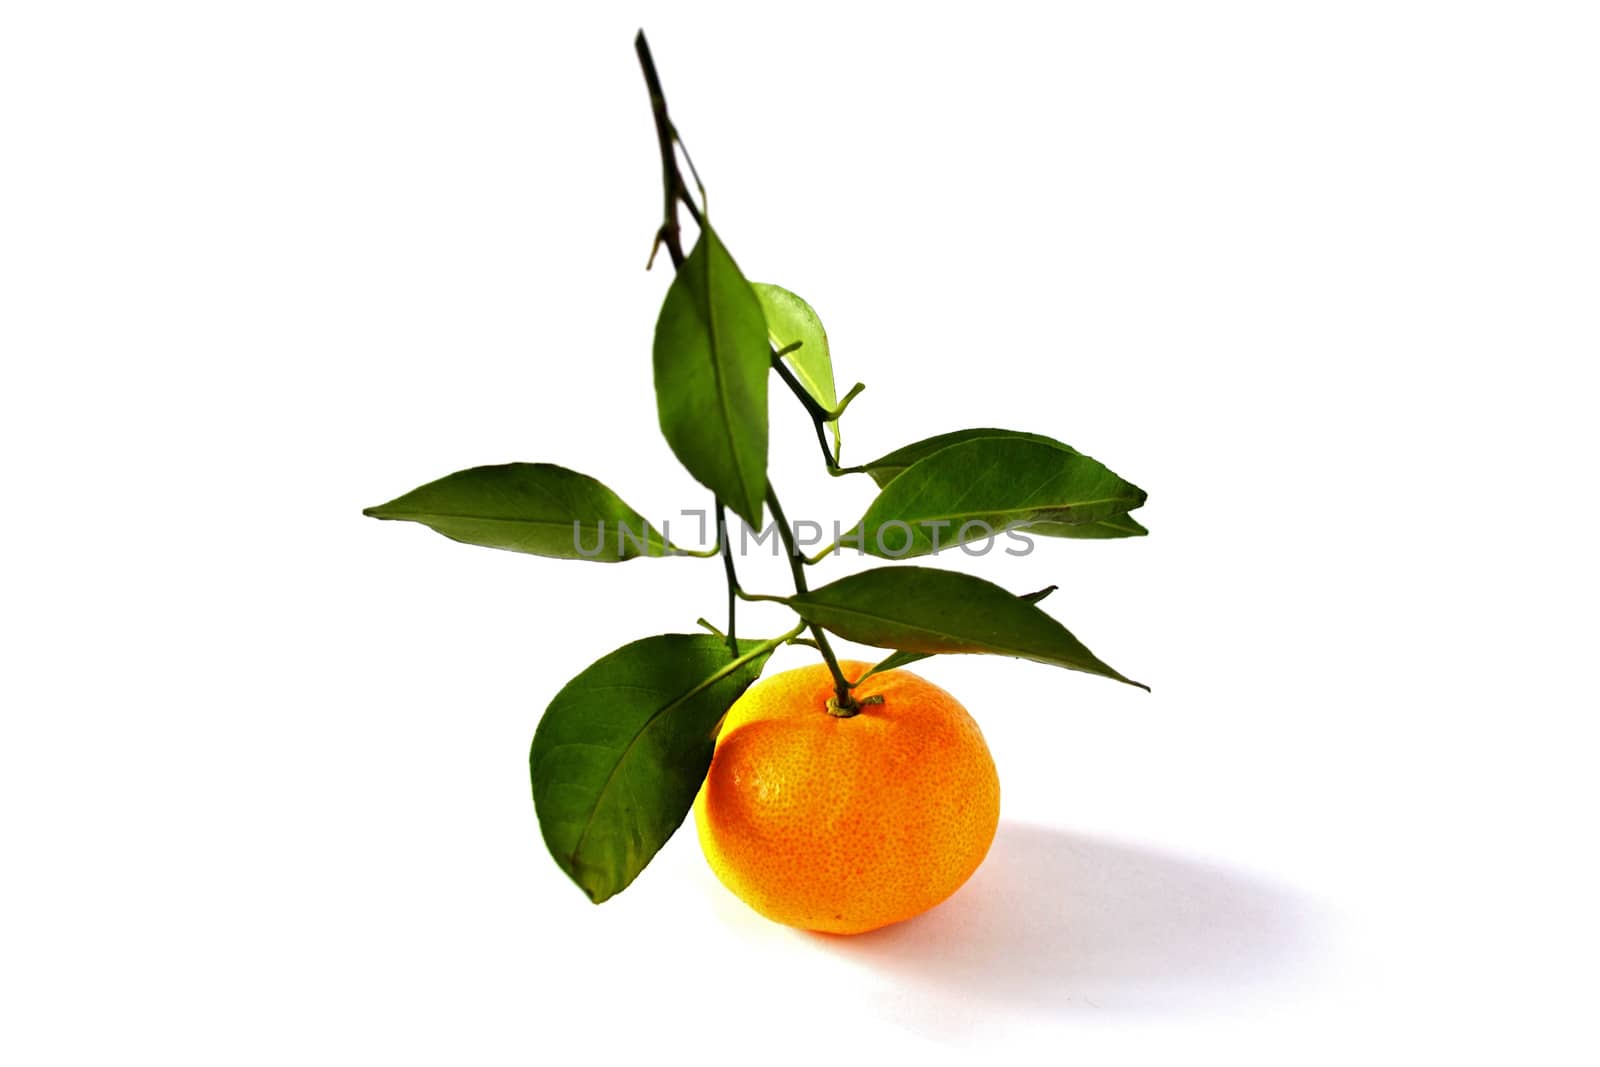 Illuminated Orange Fruit Isolated on White Background by esal78